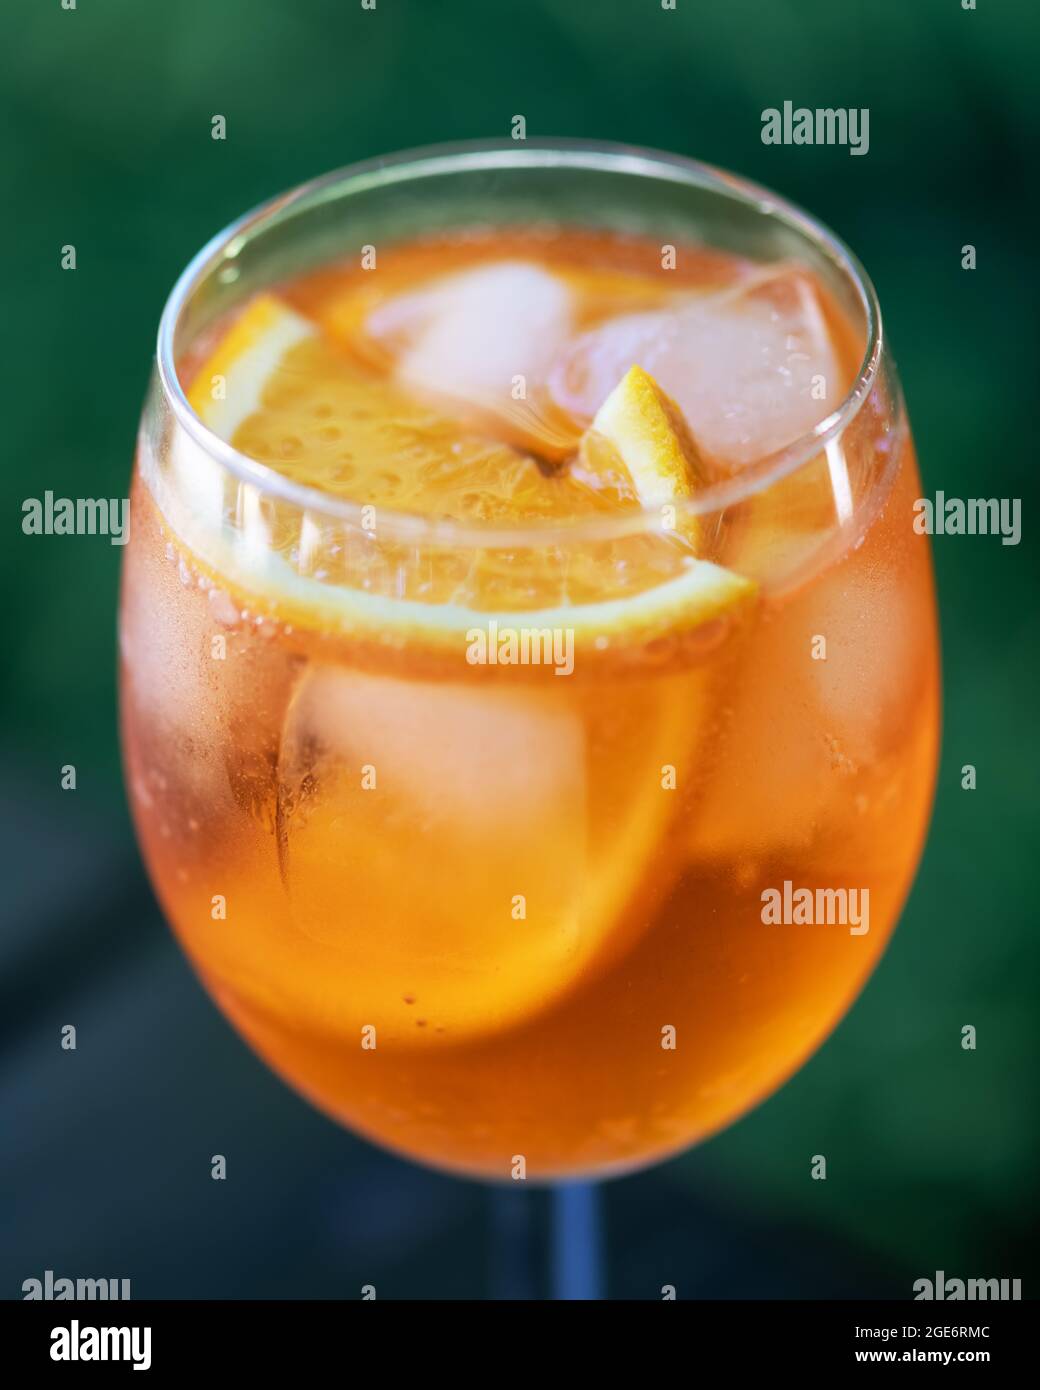 Aperitivo estivo Aperol Spritz aperitivo in vetro originale con arance e rametti di menta su sfondo di legno. Fotografia di cibo e bevande Foto Stock